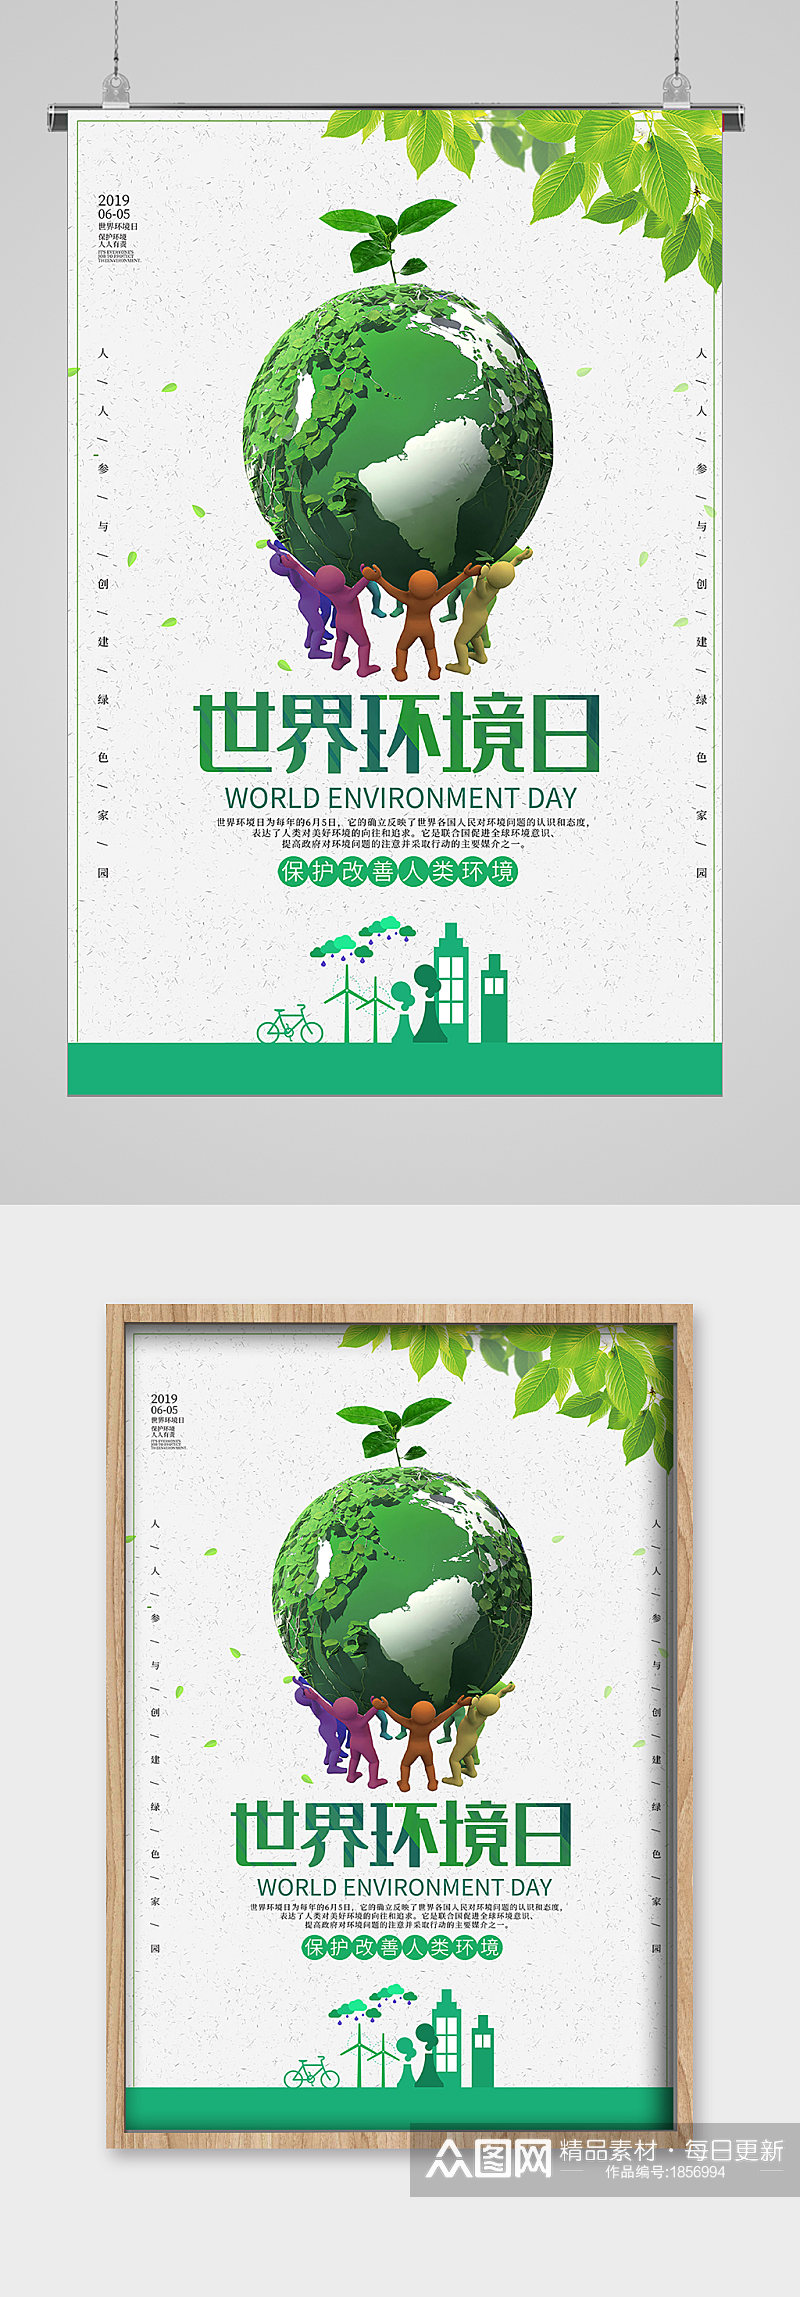 世界环境日拥抱地球宣传海报素材